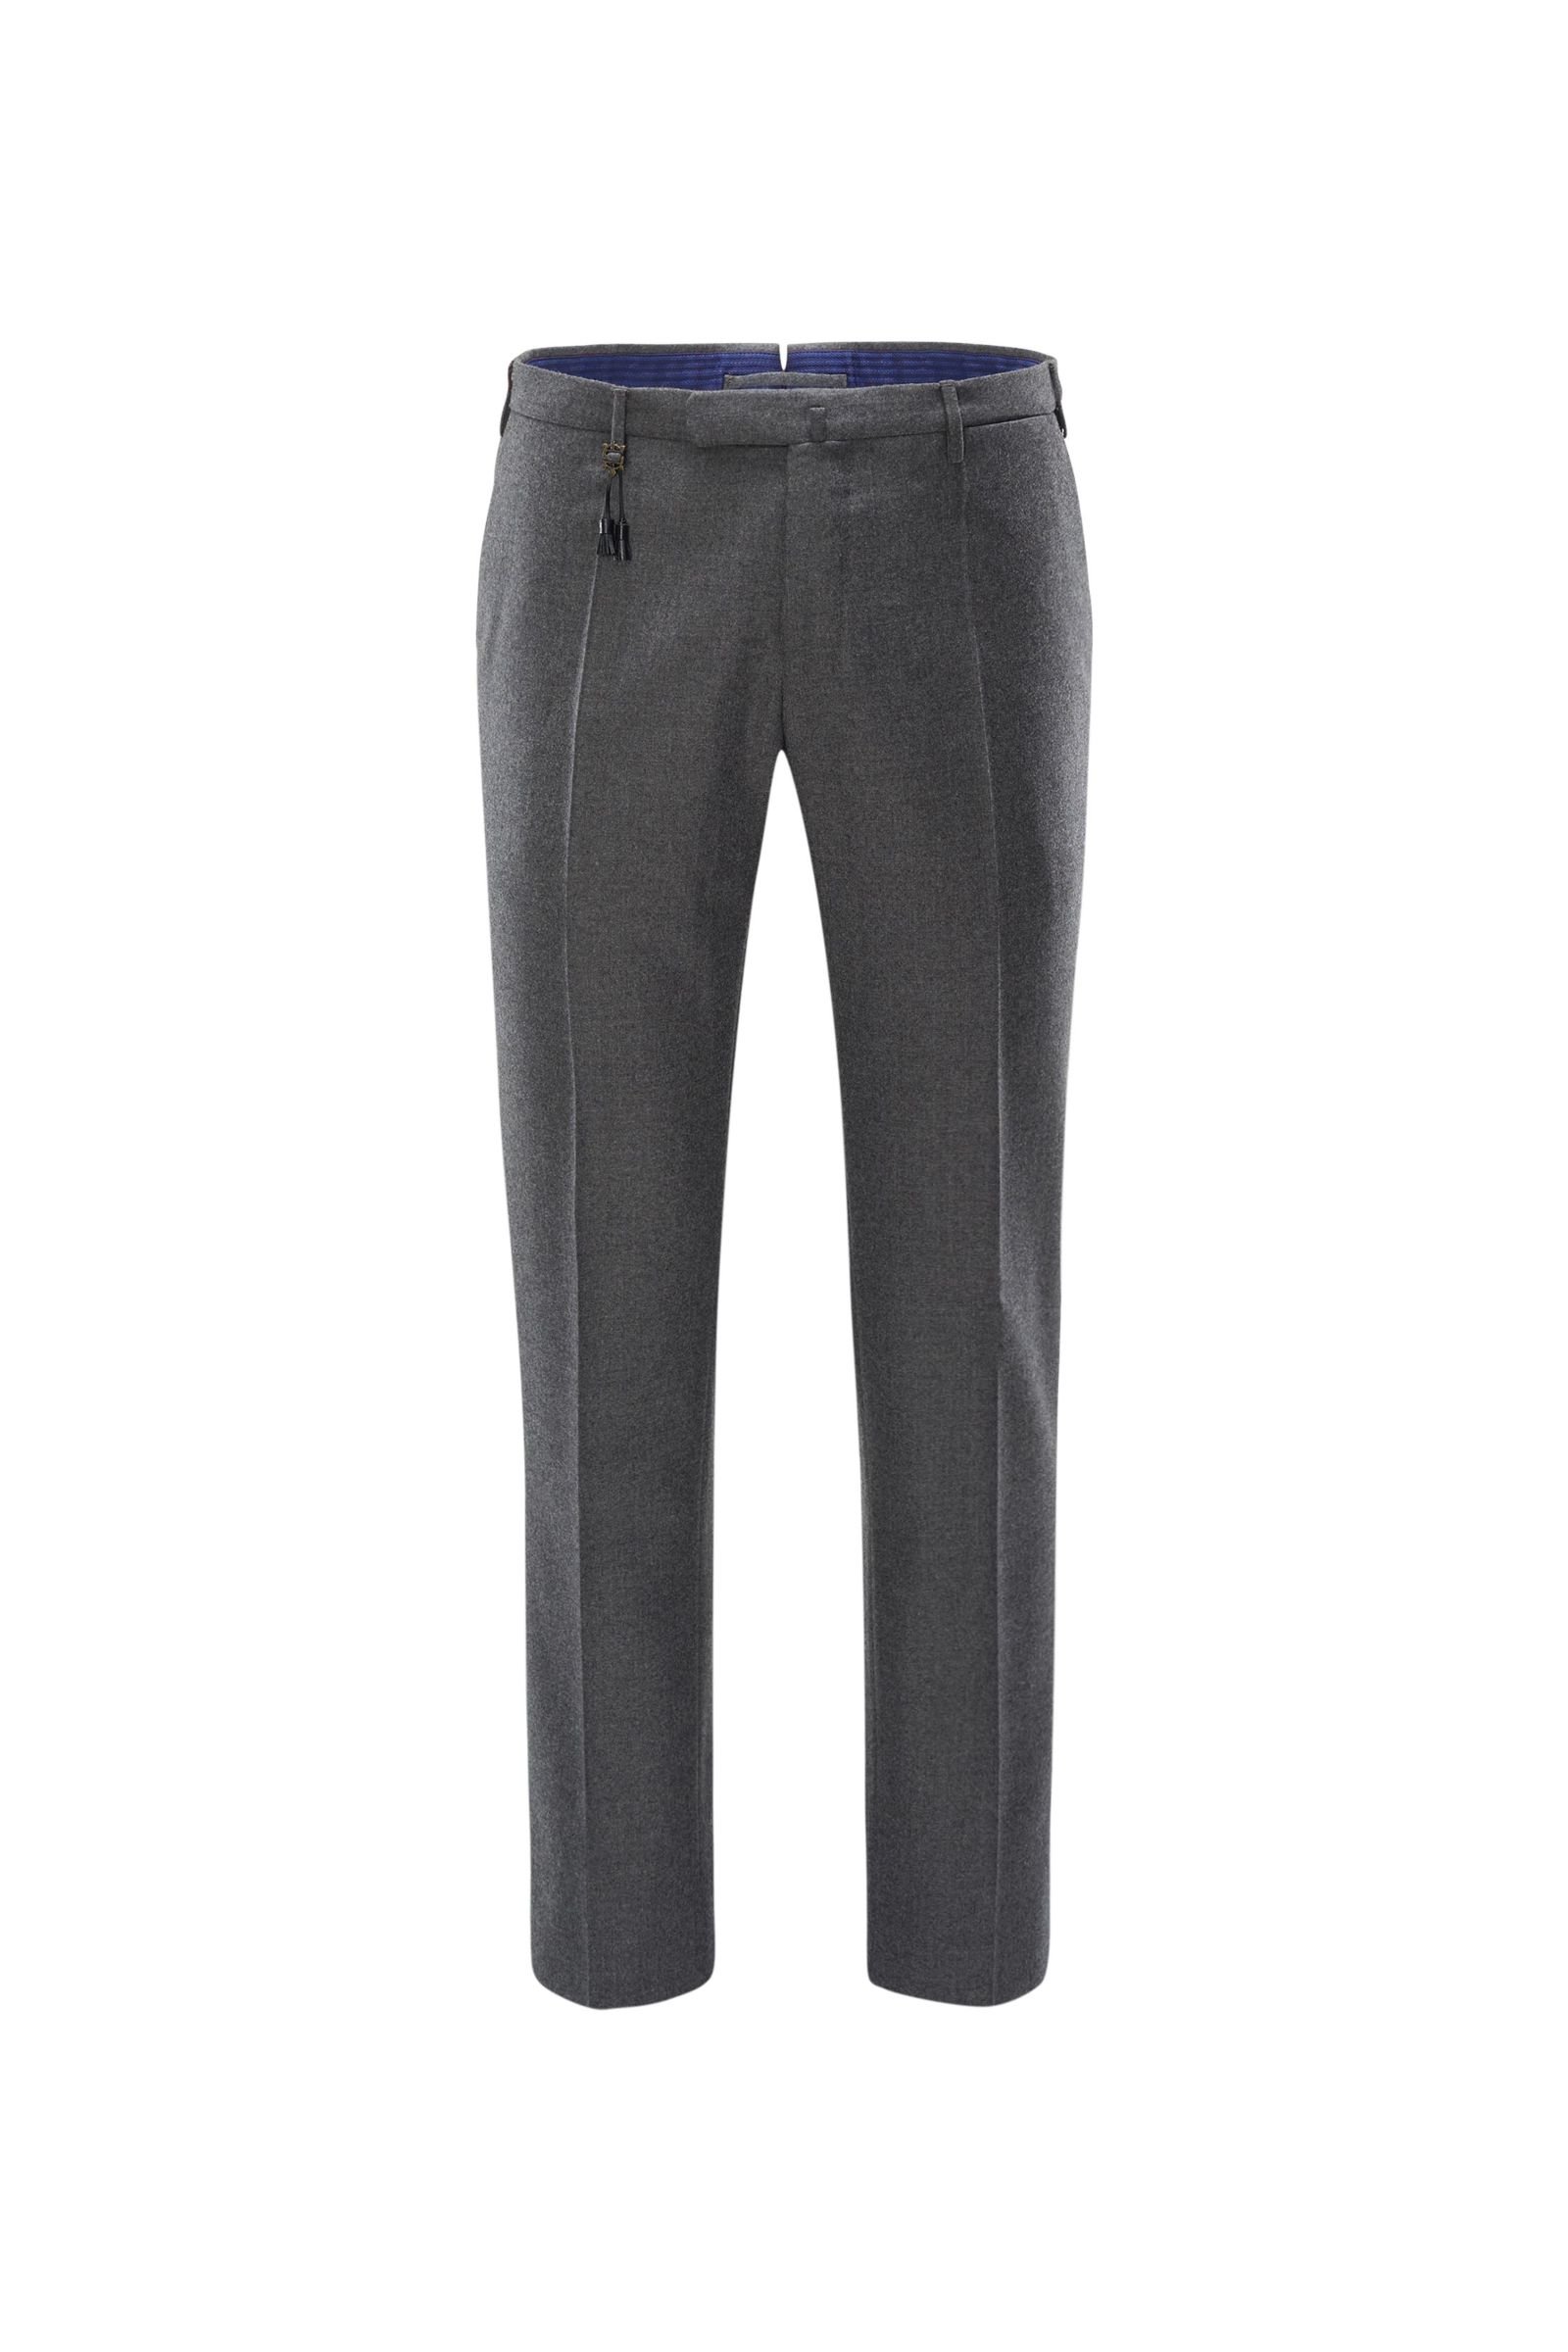 Wool trousers dark grey